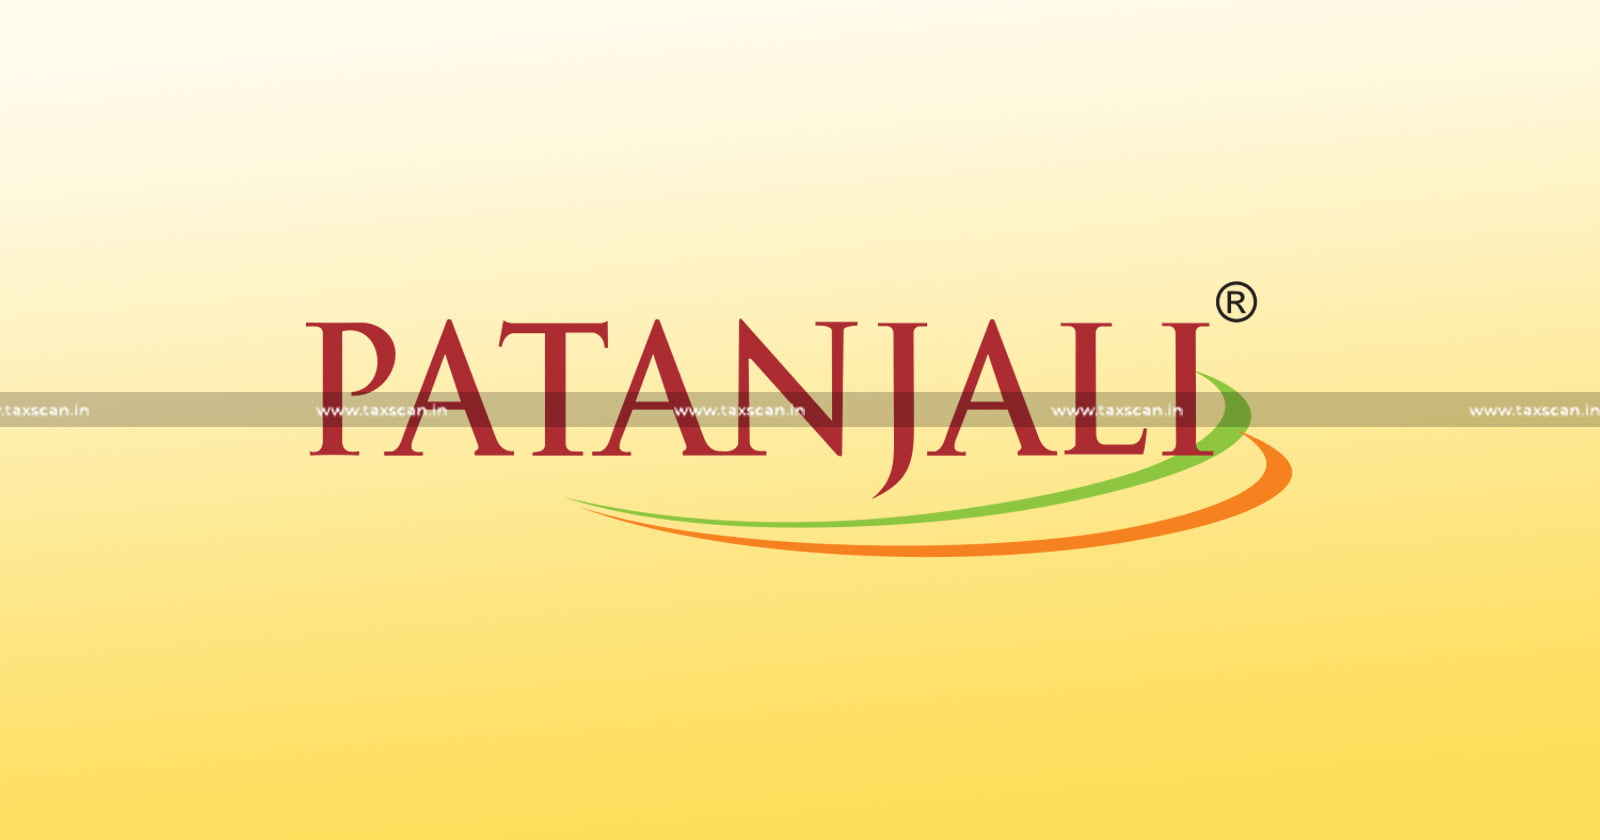 Patanjali - Baba Ramdev news - Baba Ramdev product - Patanjali gst notice - Patanjali tax controversy - taxscan